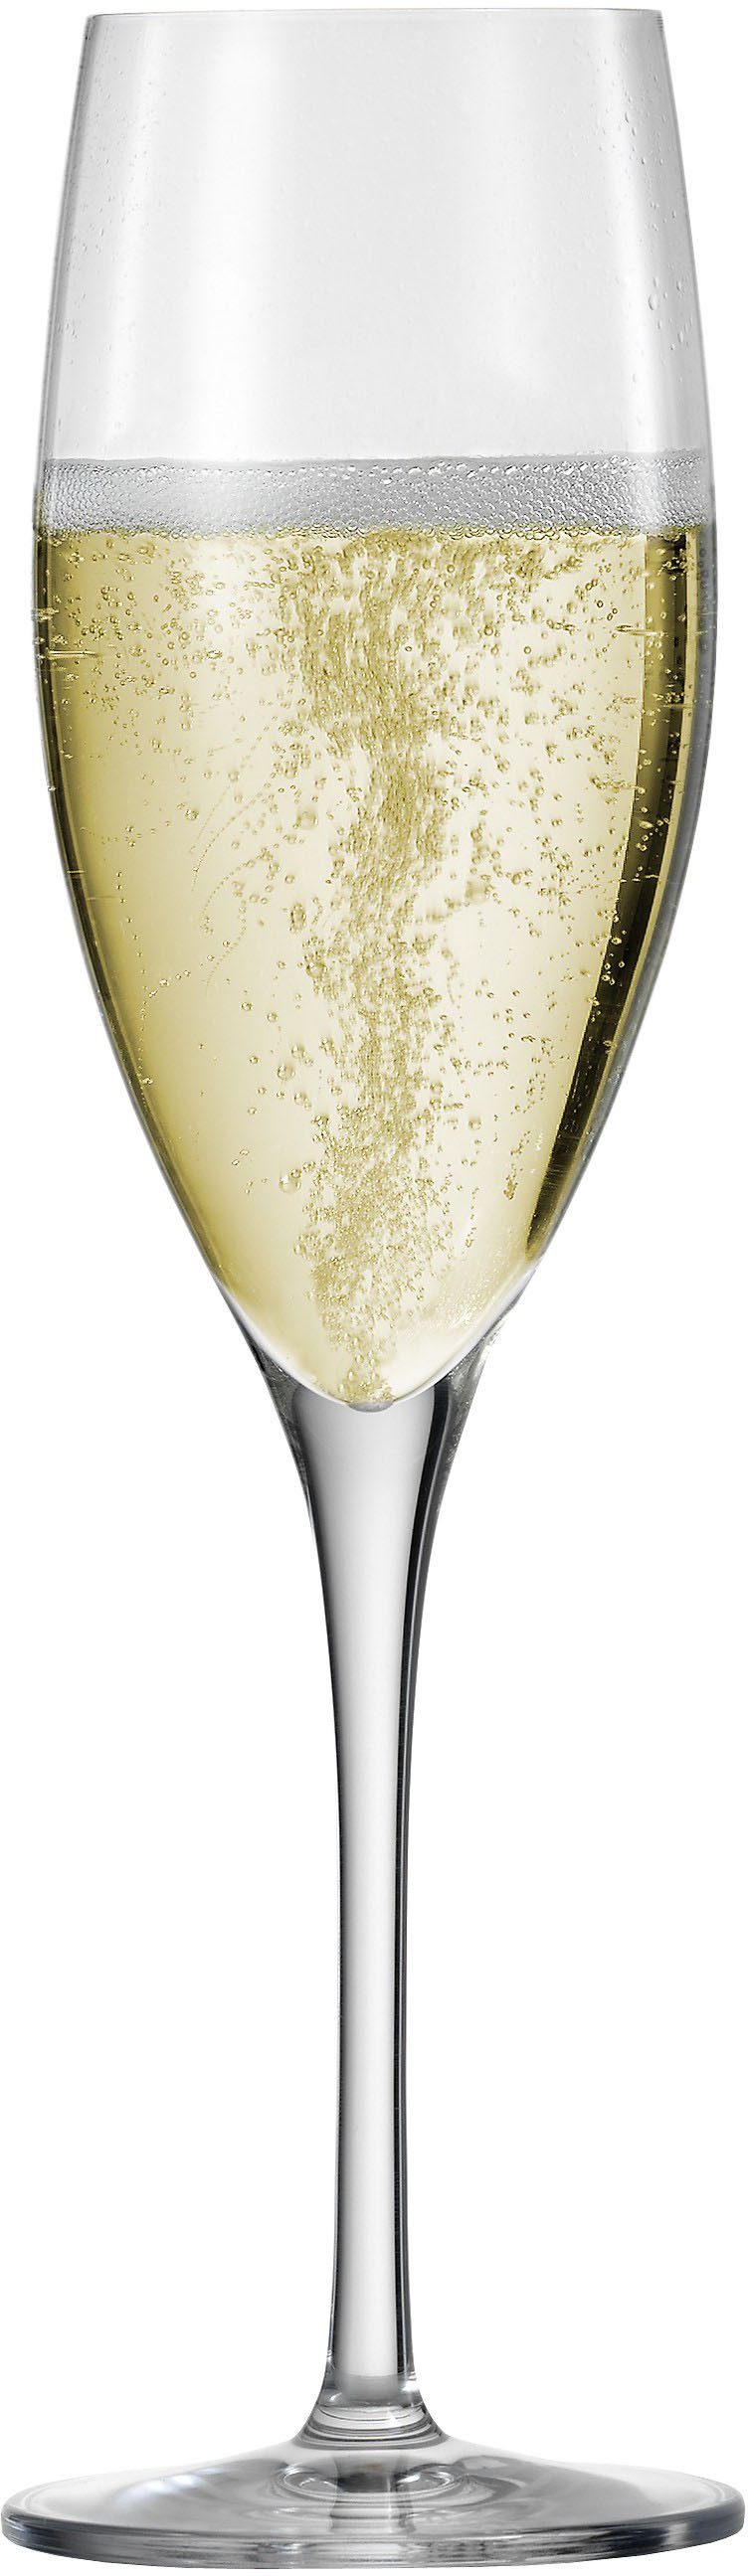 Eisch Champagnerglas Superior SensisPlus, Kristallglas, bleifrei, 278 ml, 4-teilig